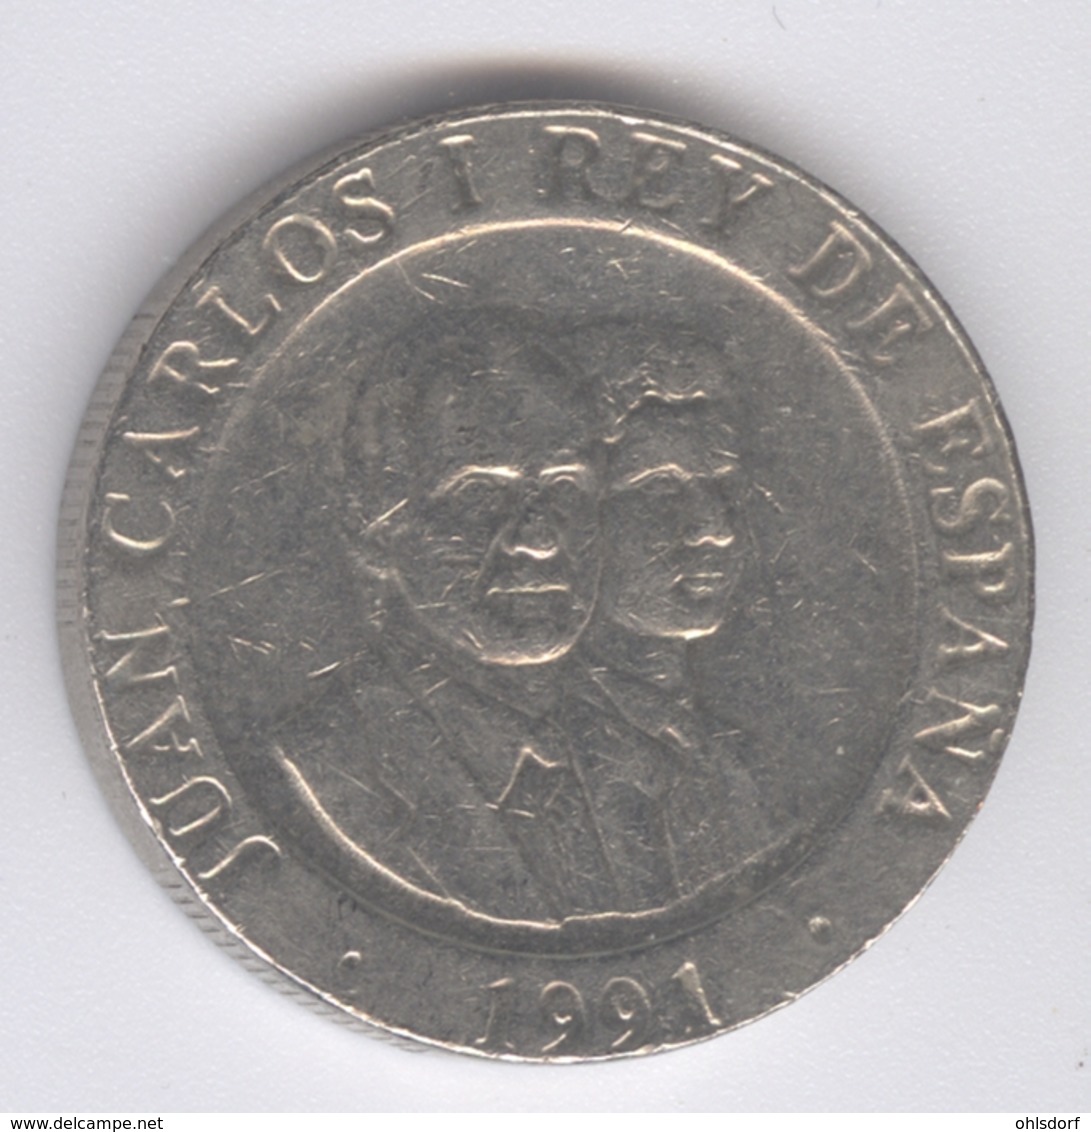 ESPANA 1991: 200 Pesetas, KM 884 - 200 Pesetas